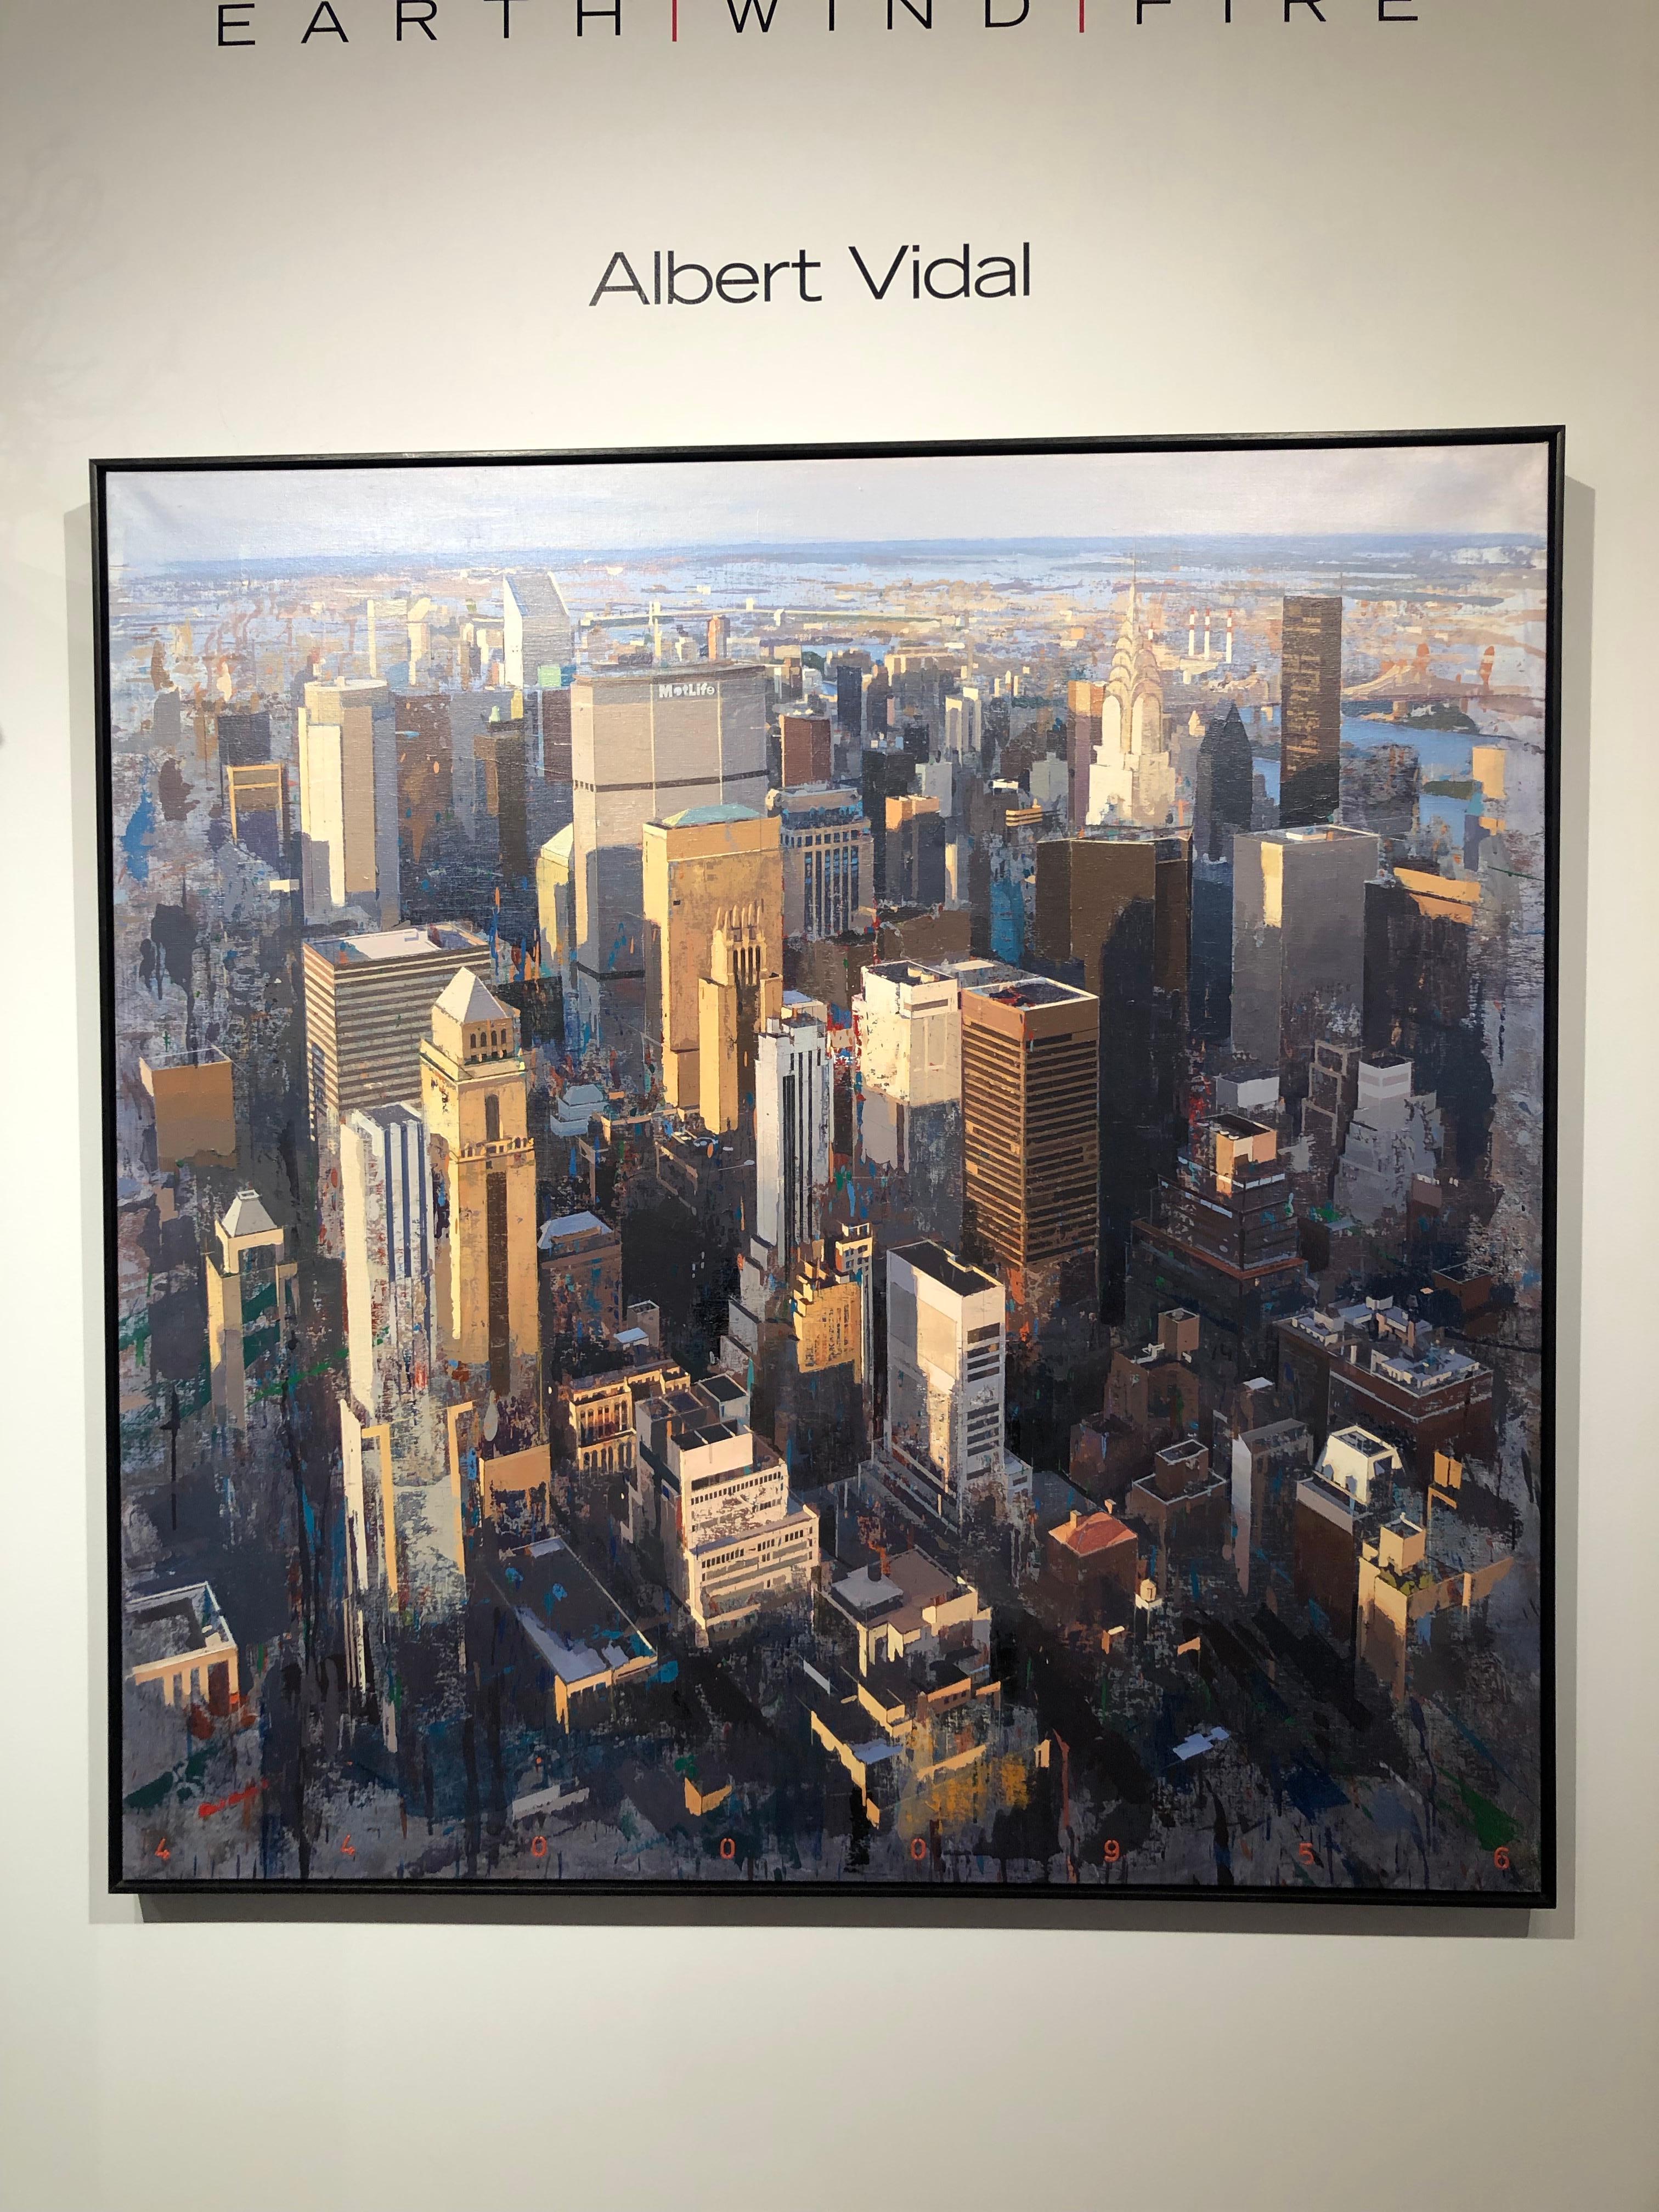 Life - Vue aérienne originale de New York - Peinture à l'huile sur toile Albert Vidal - Painting de Albert Vidal Moreno